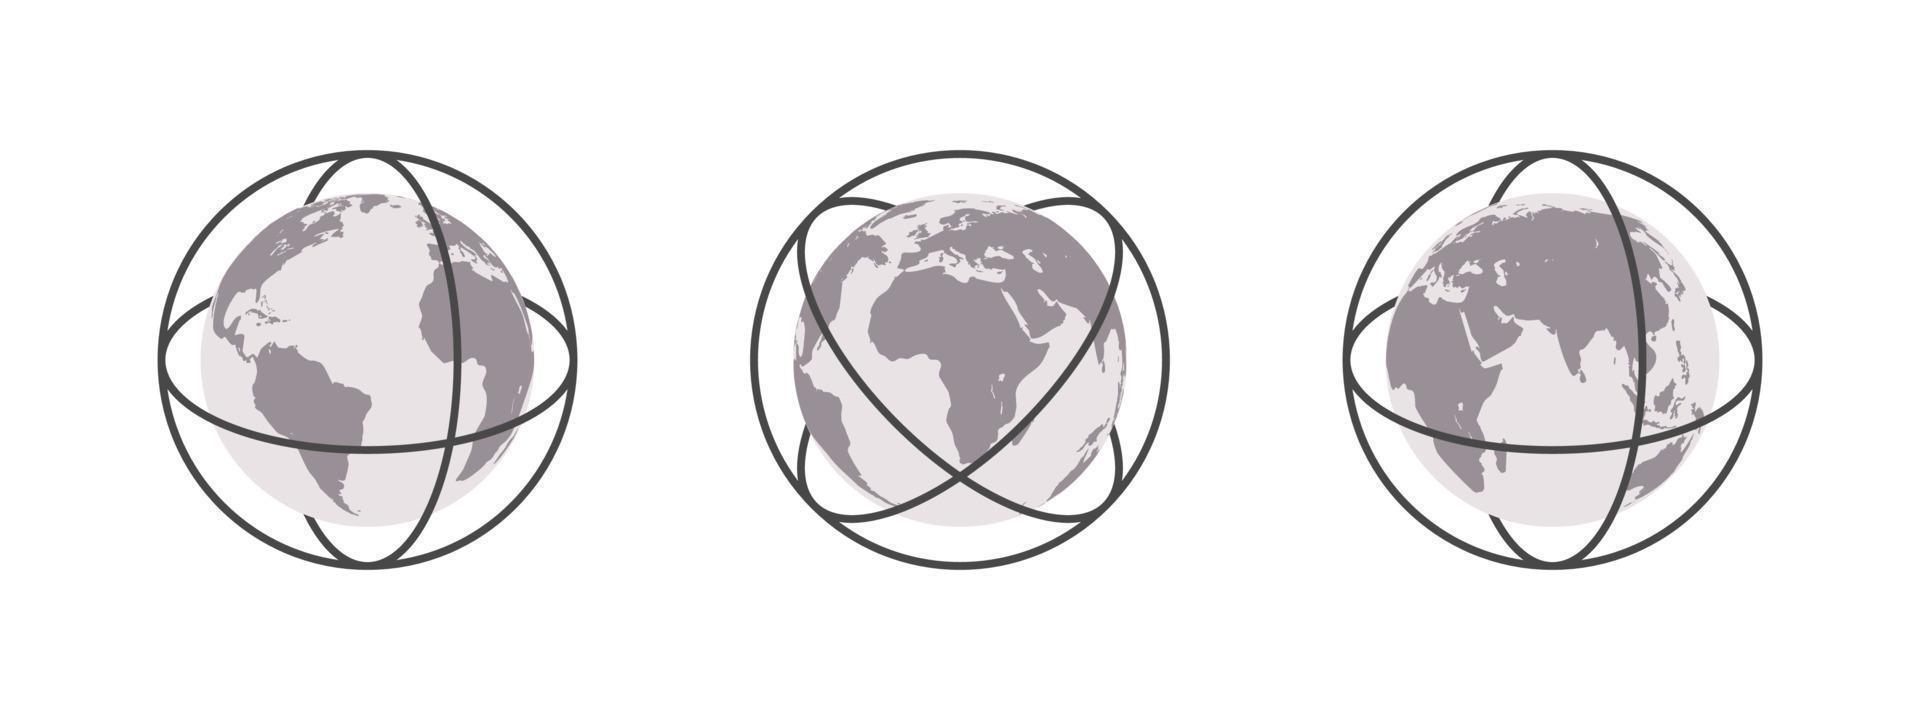 globos terrestres com linhas centrais. mapa-múndi em forma de globo. conjunto de ícones do globo terrestre. ilustração vetorial vetor